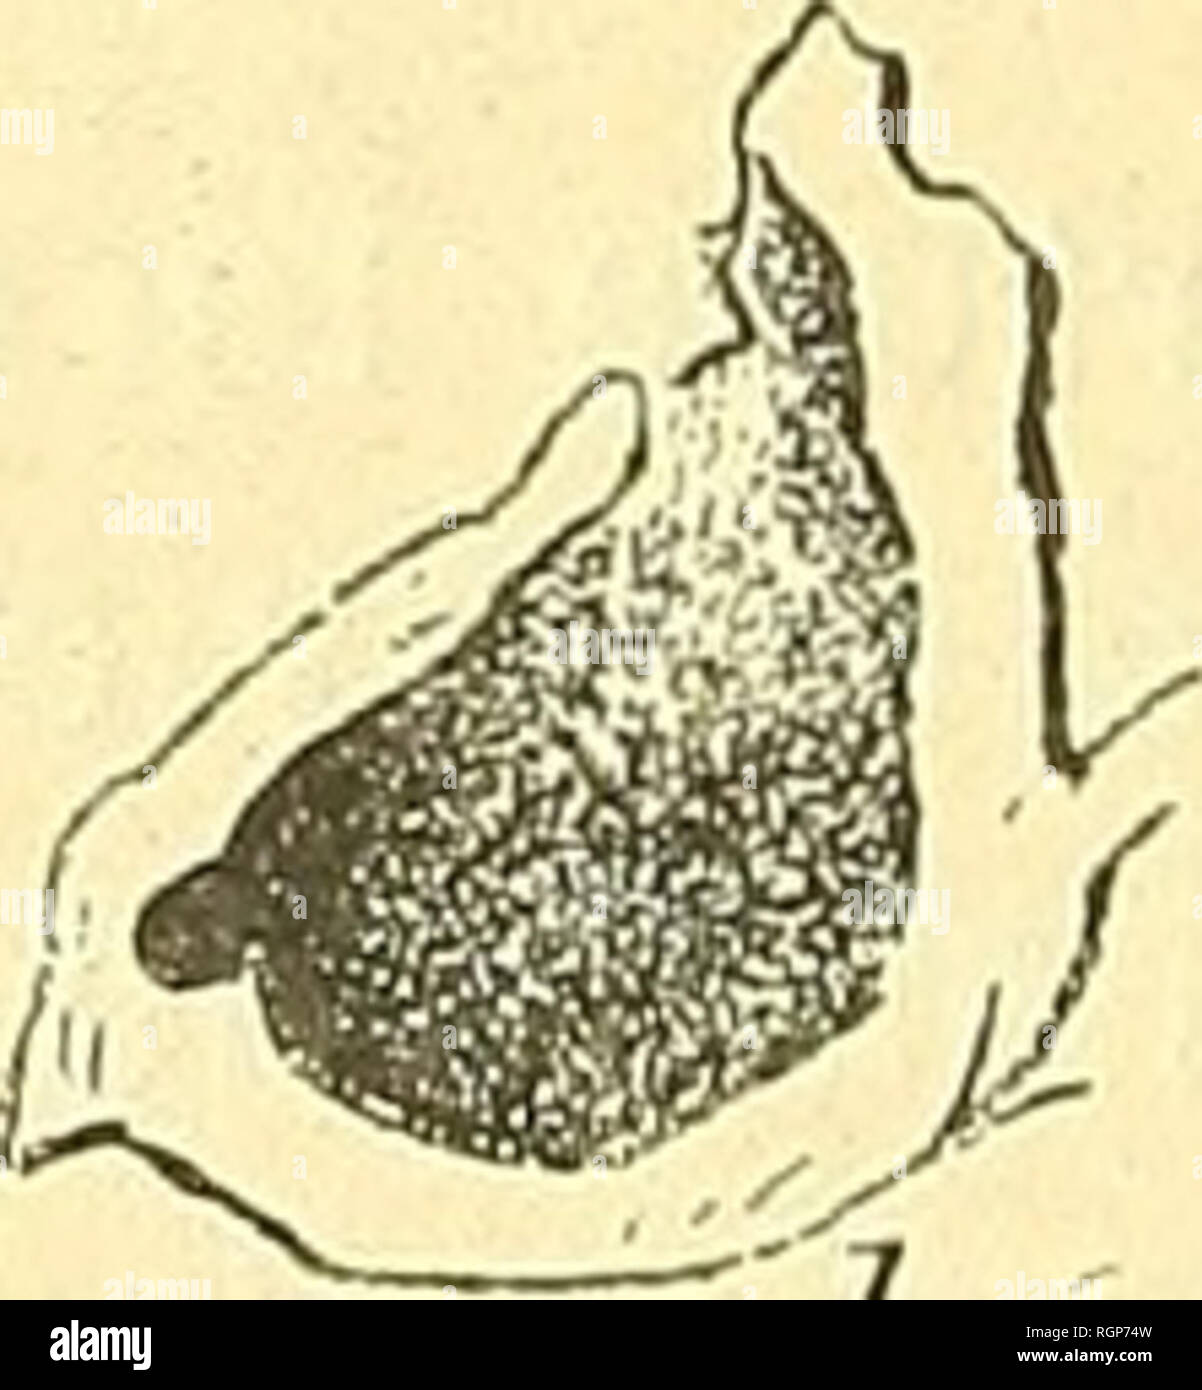 . Bulletin de la Société géologique de France. Geology. Fig. 64. — Murinopsia J. Jullien. — Type : M. Francqana (d'Orb.) (d'après Beis- sel) ; a. zoécie vue de face ; b, zoécie vue de profil ; c, zoécie vue de dos ; d, coupe dans une zoécie. M. Francqana d'Orb. 1851. Multescharipora Francqana d'Orb. Loc. cit., p. 497, pi. 734, fig. 6-8. 1865. Semiescharipora galeata Beissel. Bry. Aach. K. p. 55, pi. 6. fig. 70-75, pi. 7, fig. 76. 1887. Lagodiopsis Francqana Marsson. « Rûgen », p. 100. La = 0,07 Zoécie 1^^ = 0,64-0,71 la = 0,14 l Iz = 0,42 Ouverture. Please note that these images are extracted  Stock Photo